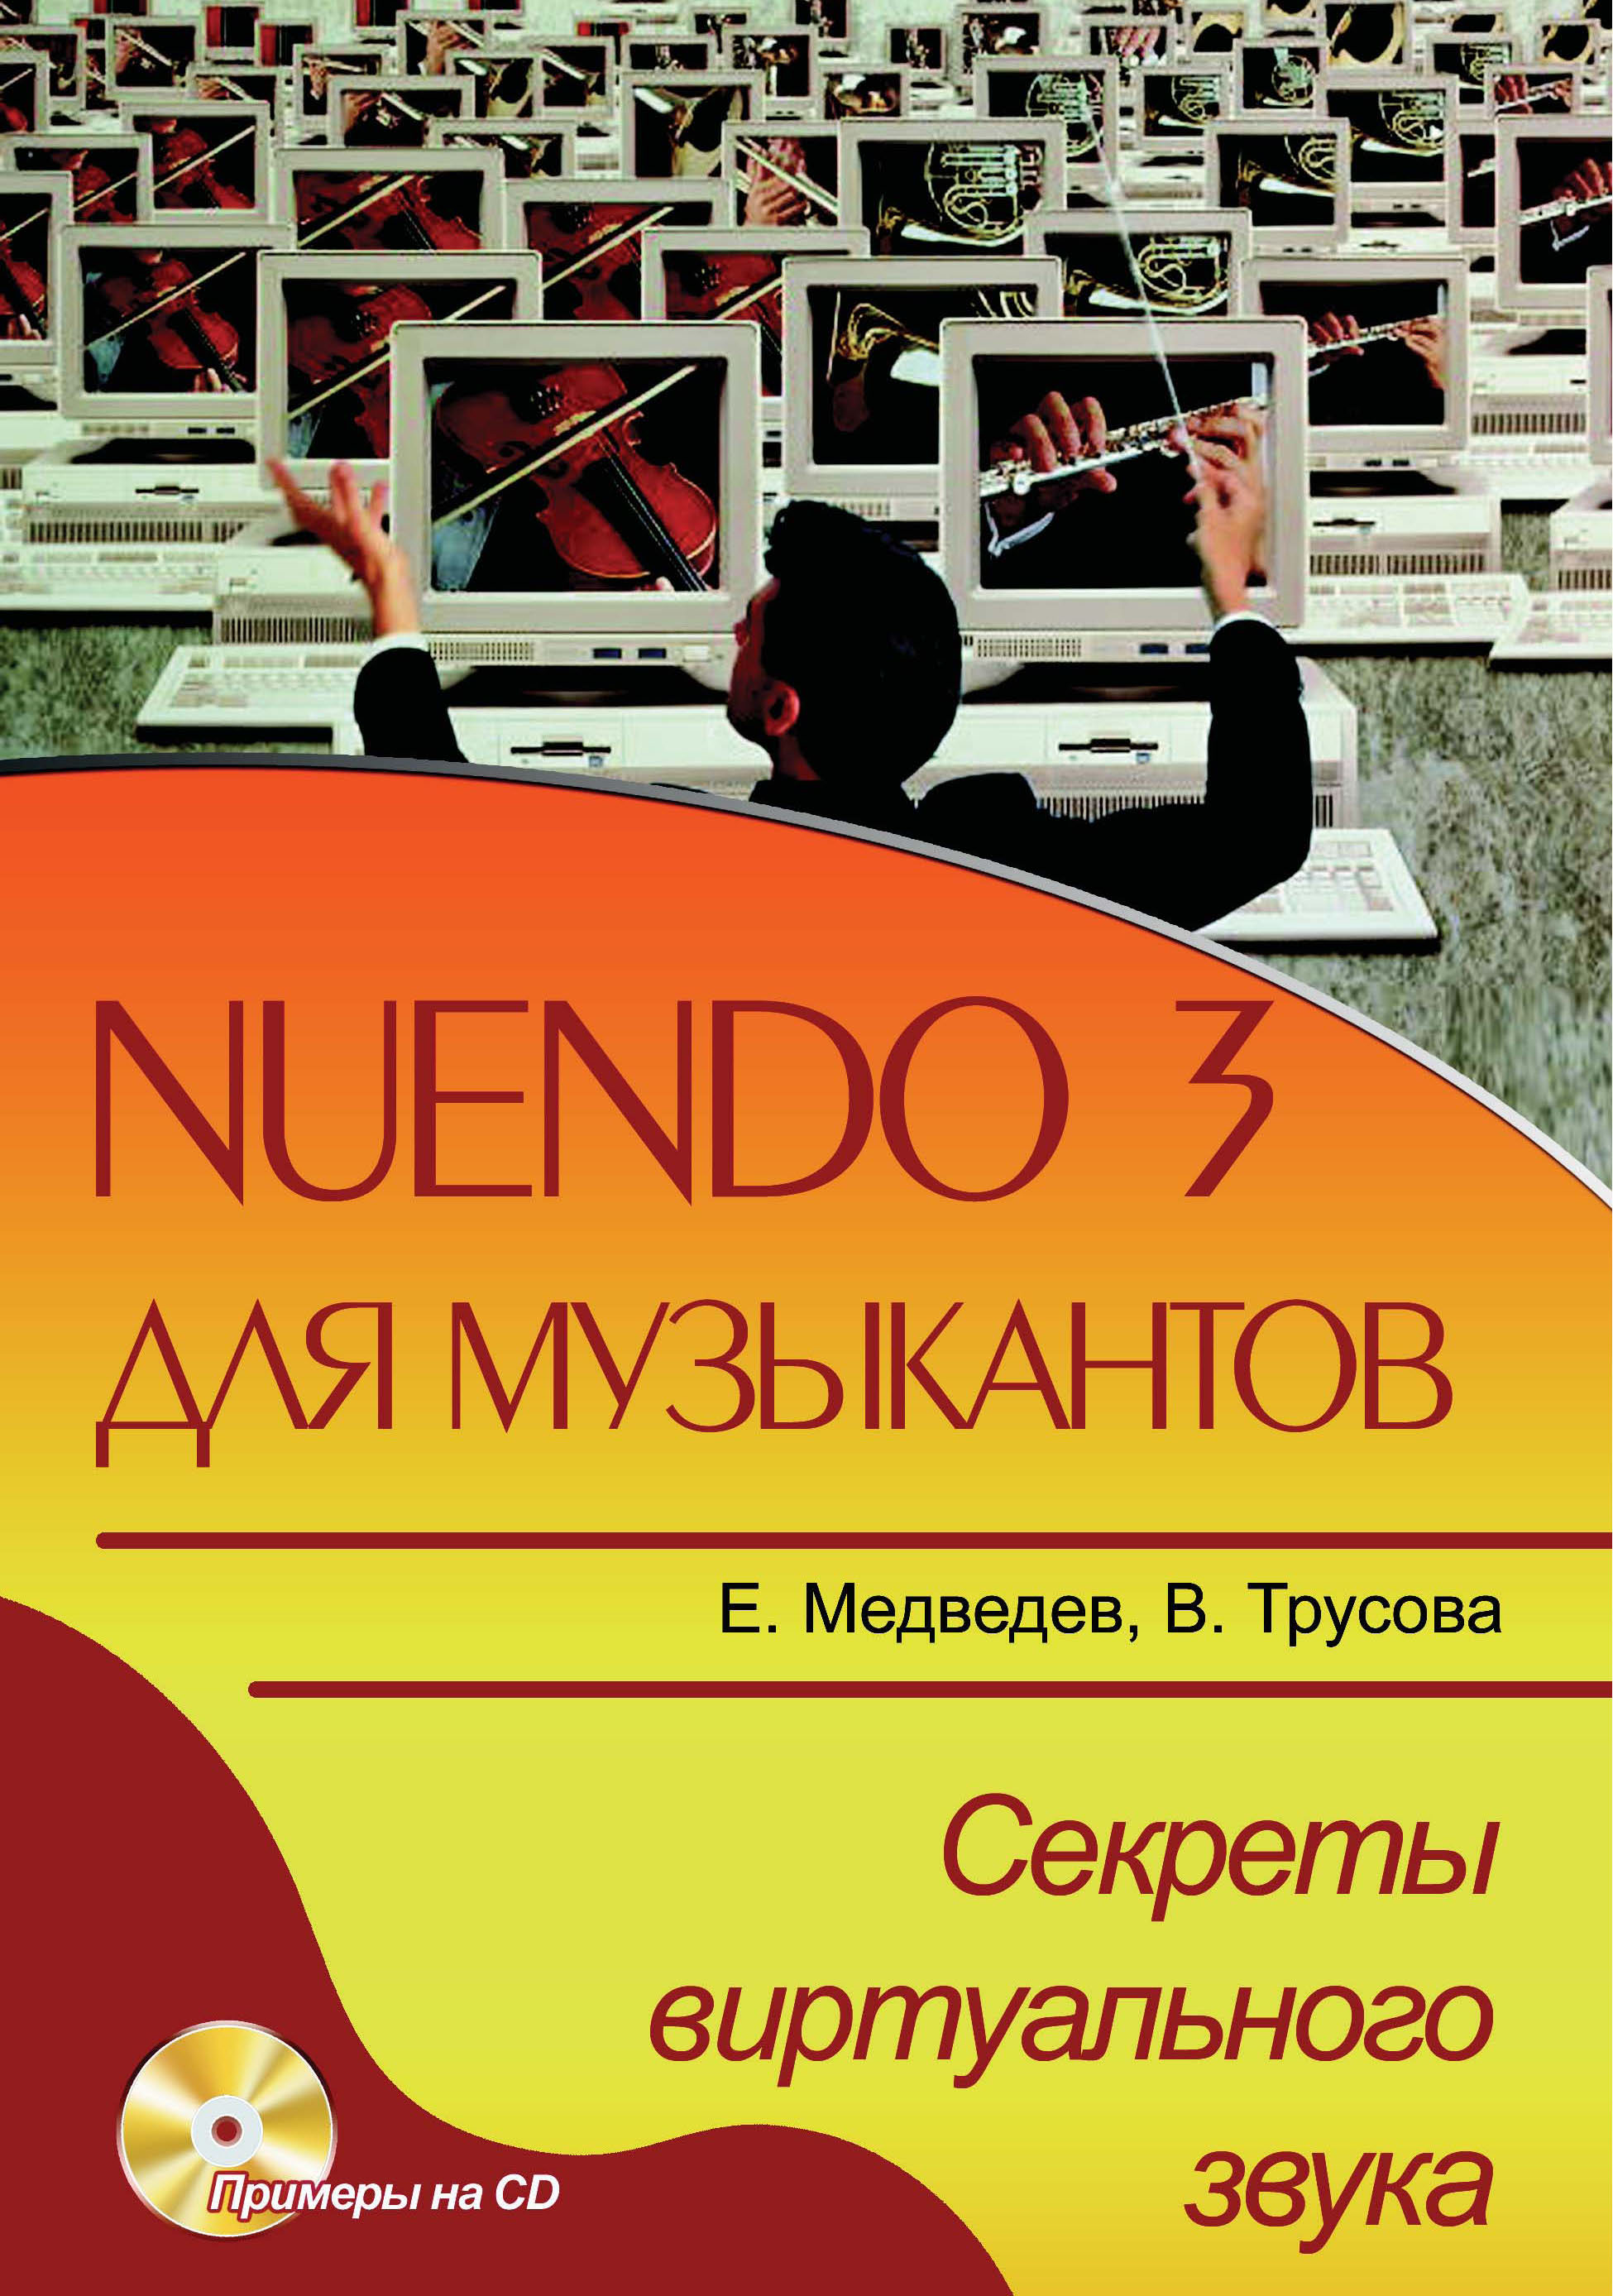 Книга  Nuendo 3 для музыкантов. Секреты виртуального звука созданная Е. В. Медведев, В. А. Трусова может относится к жанру музыка, программы, руководства. Стоимость электронной книги Nuendo 3 для музыкантов. Секреты виртуального звука с идентификатором 48411367 составляет 299.00 руб.